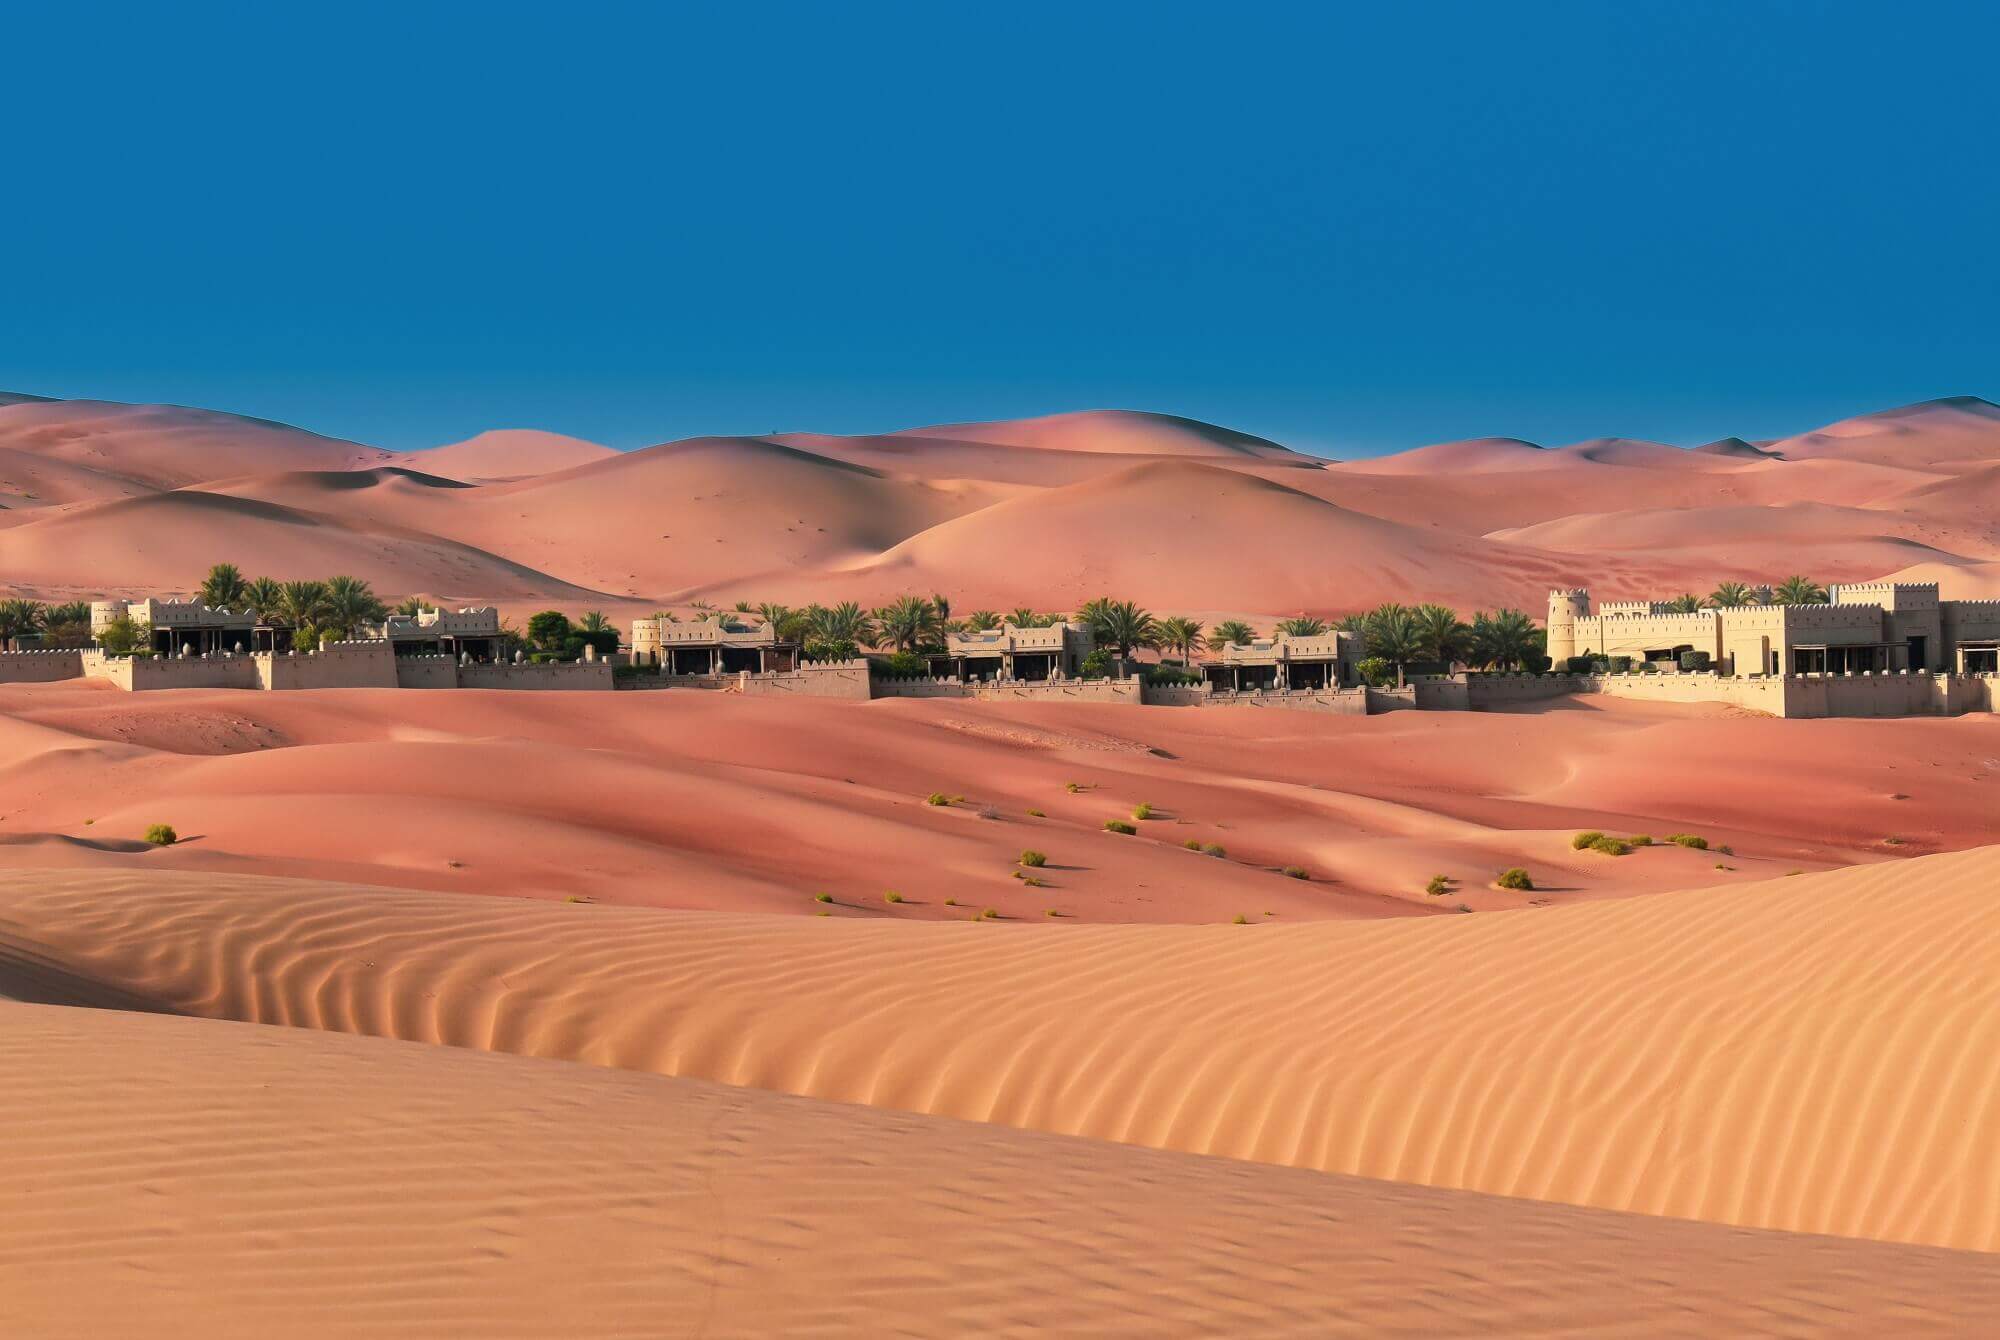 Al Shams desert resort